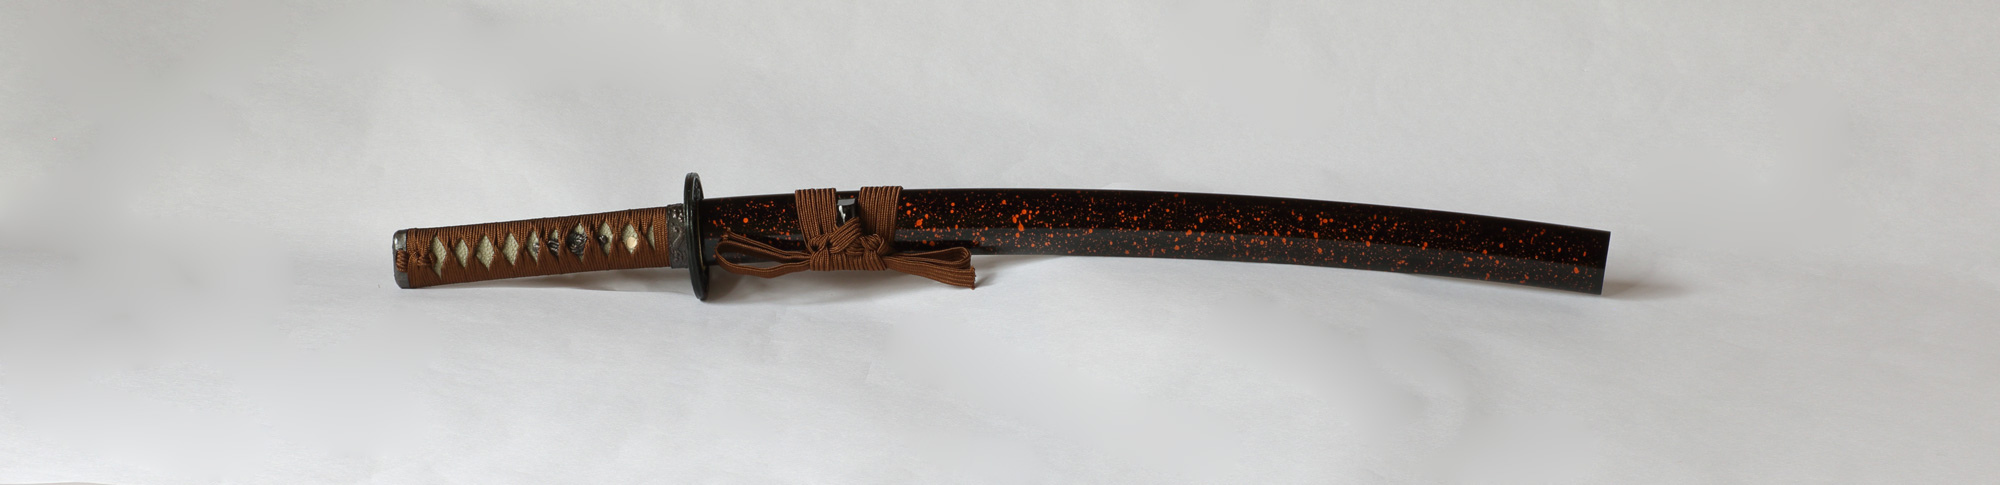 dark golden brownshort sword